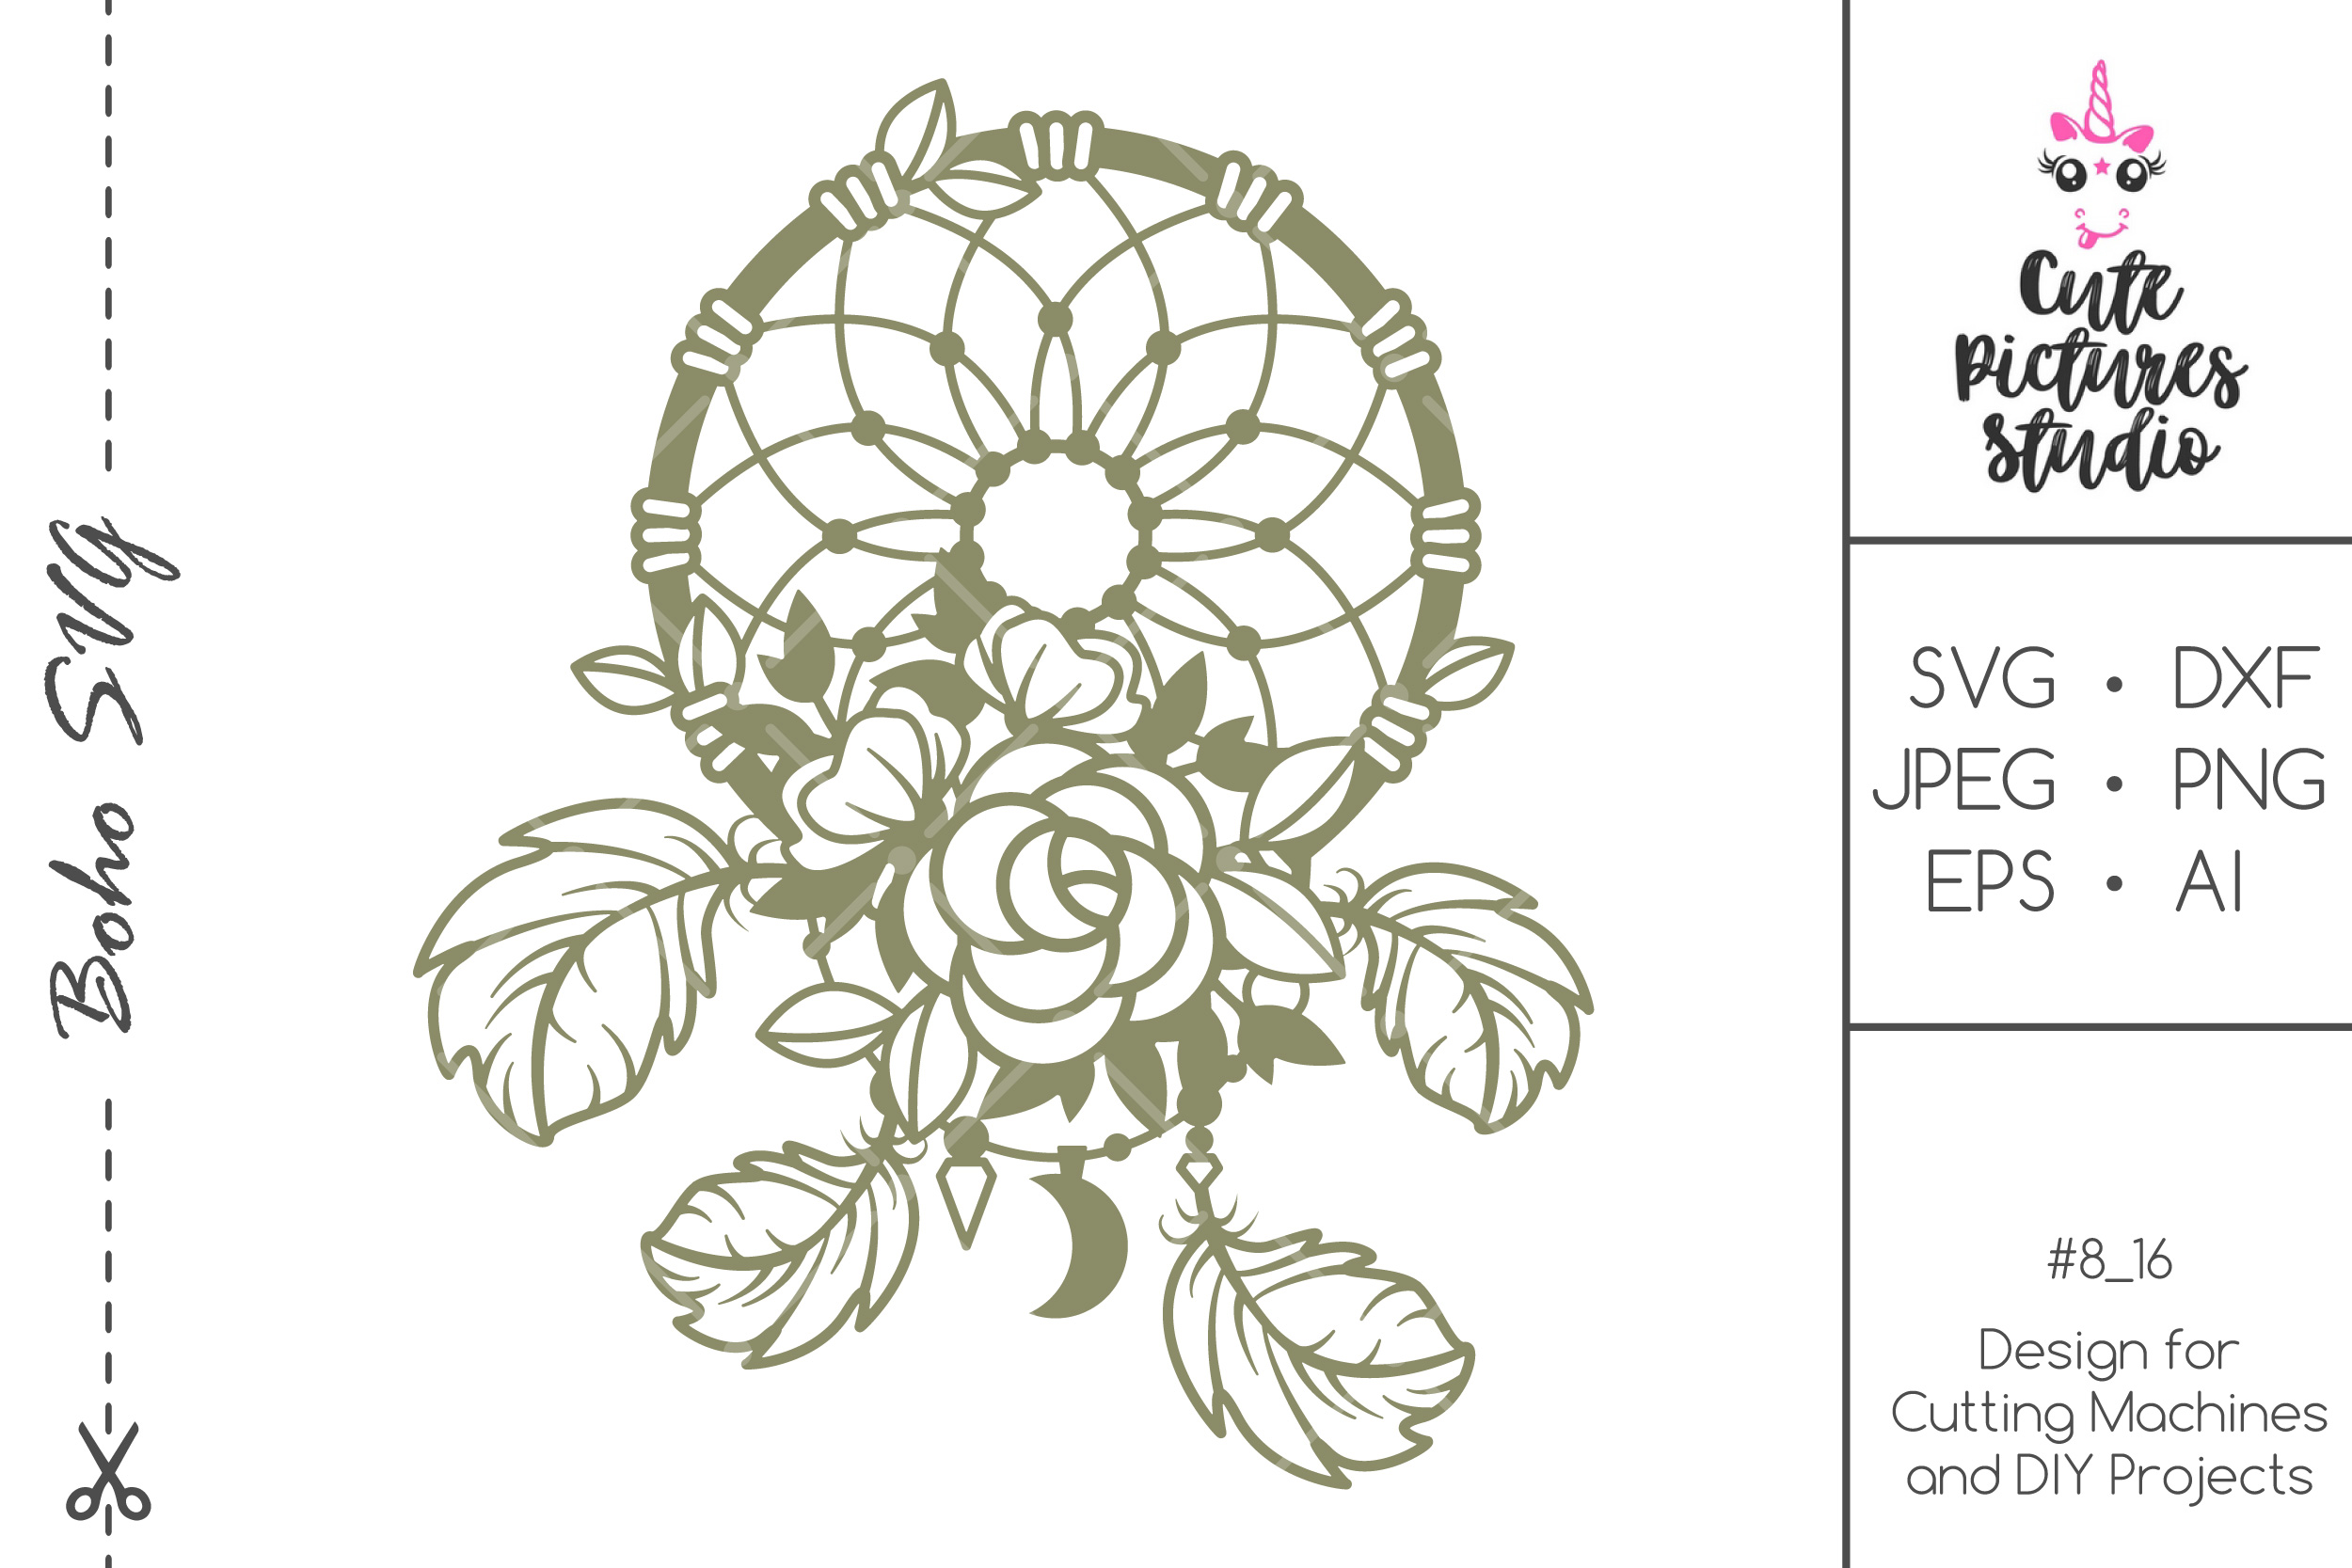 Floral dream catcher SVG cut file, Feather SVG